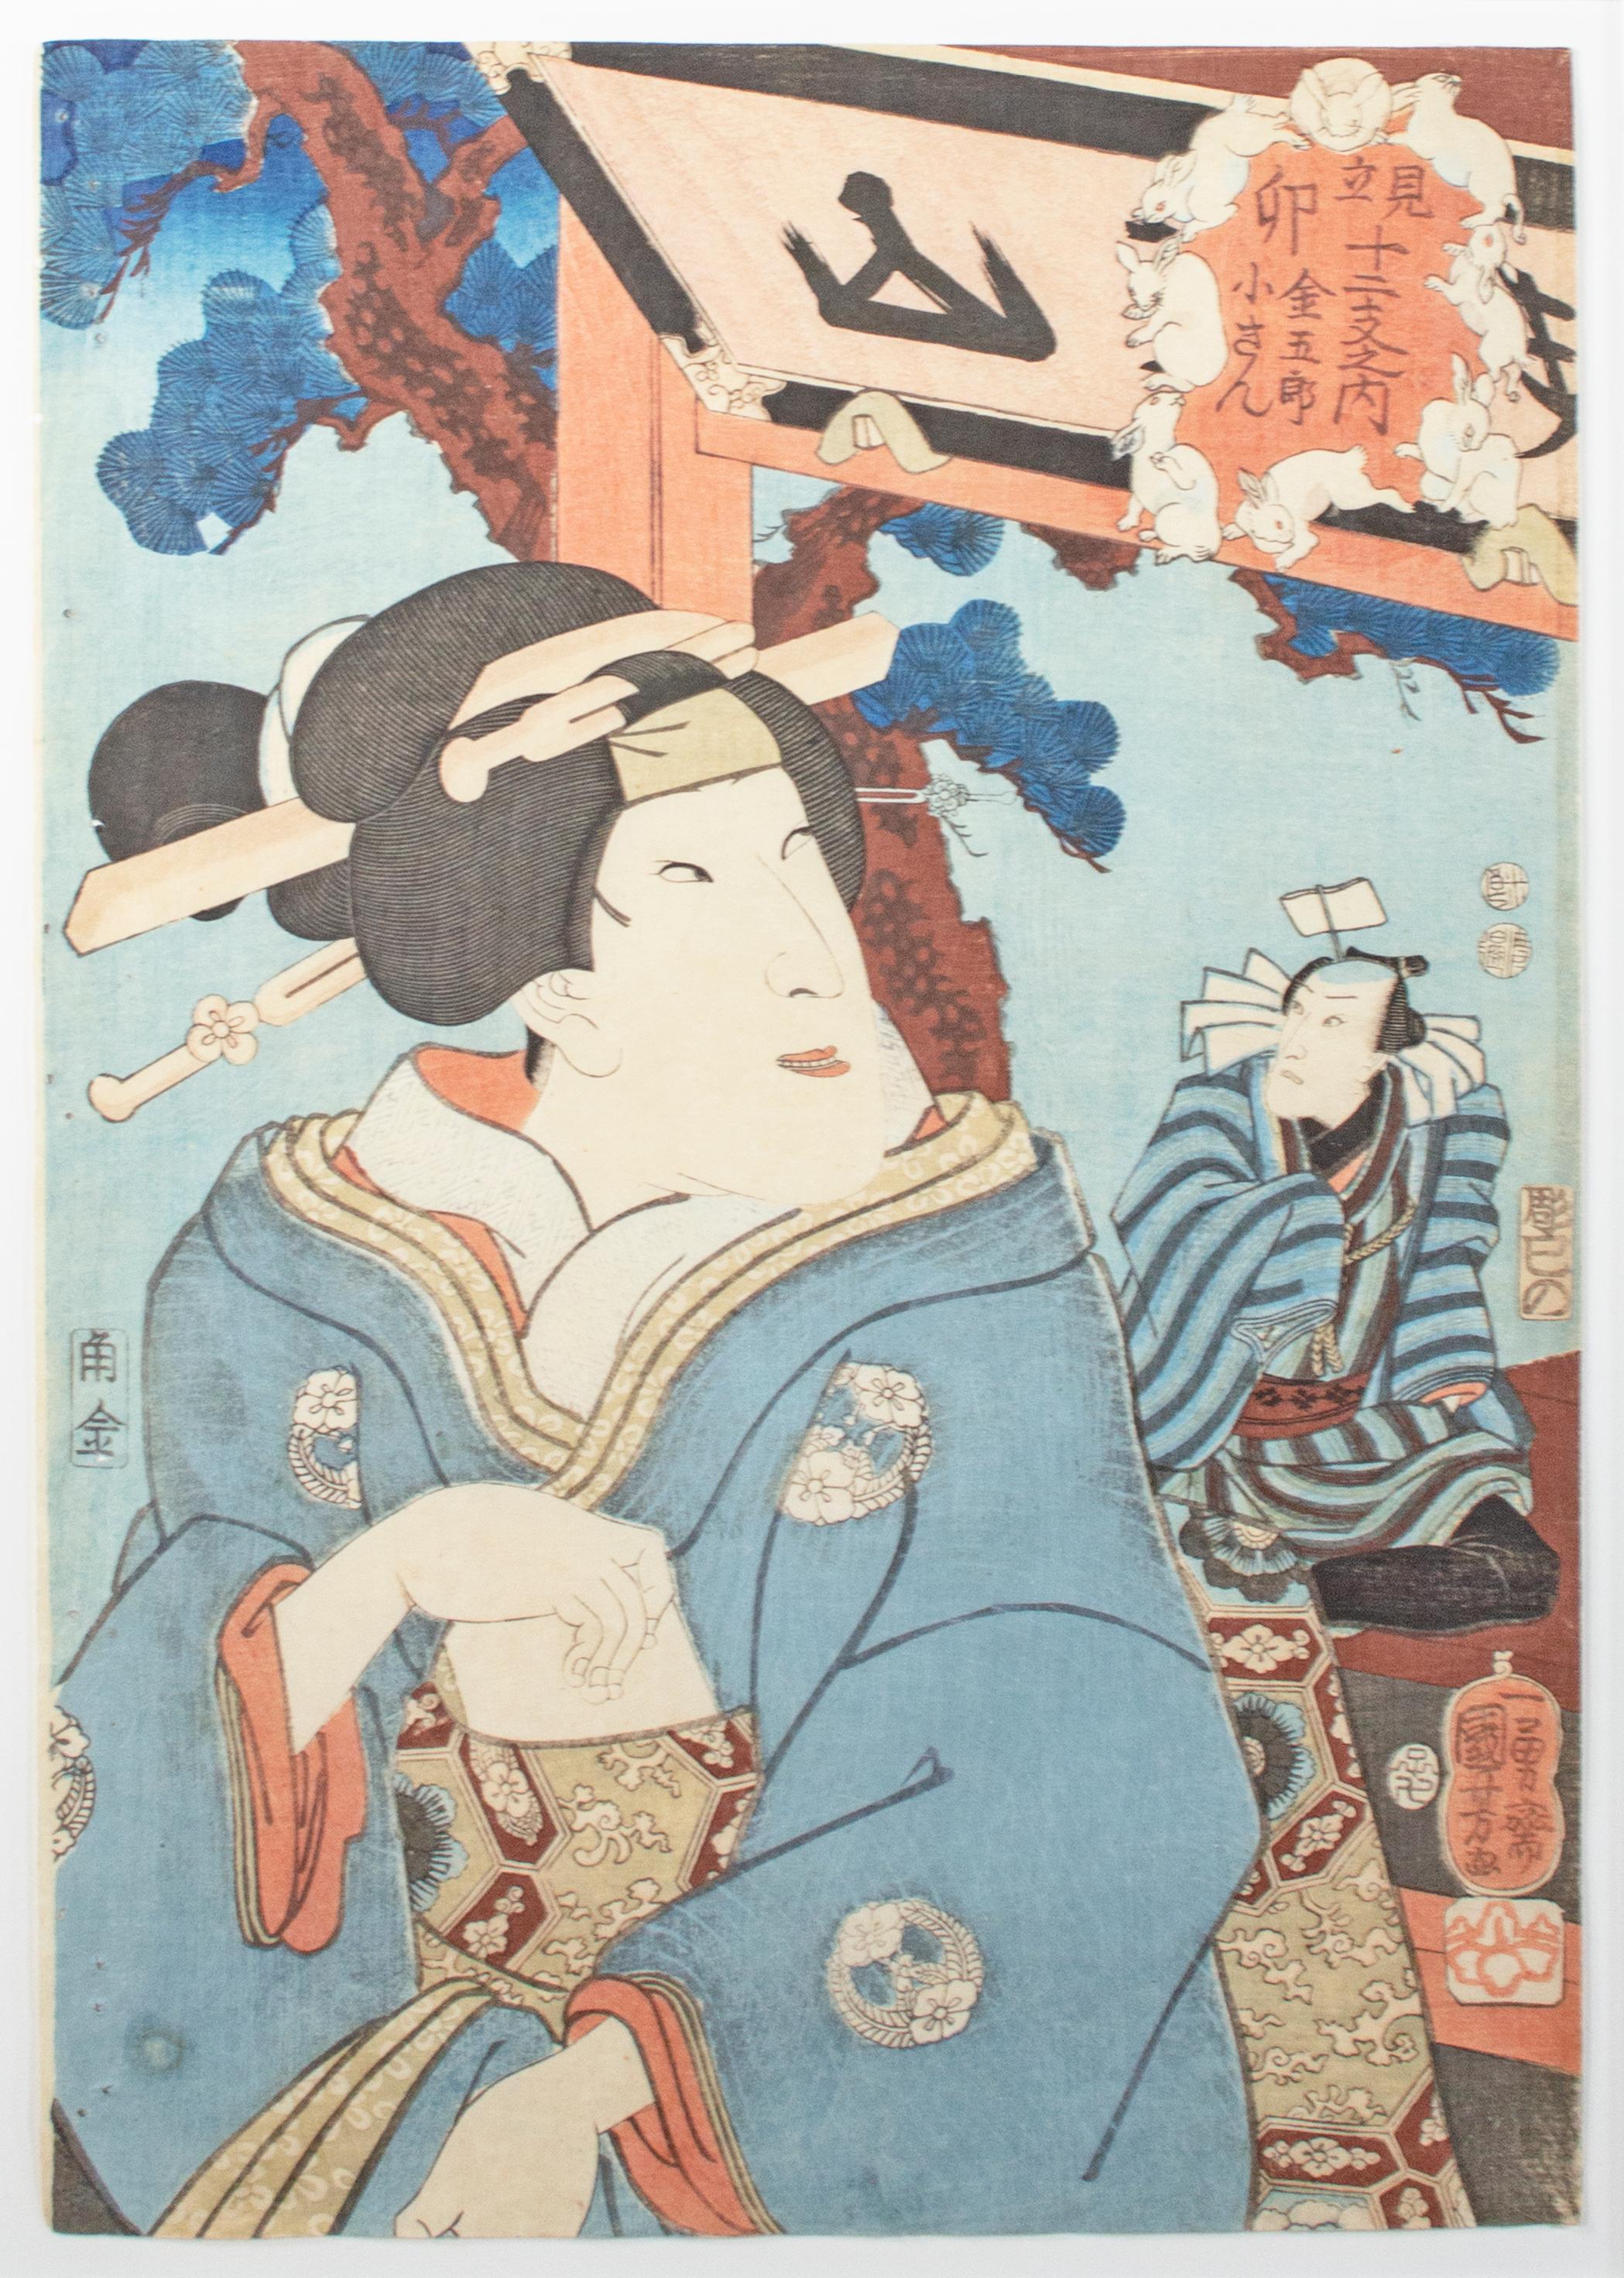 19th century color woodcut Japanese ukiyo-e print female geisha figure signed - Print by Utagawa Kuniyoshi